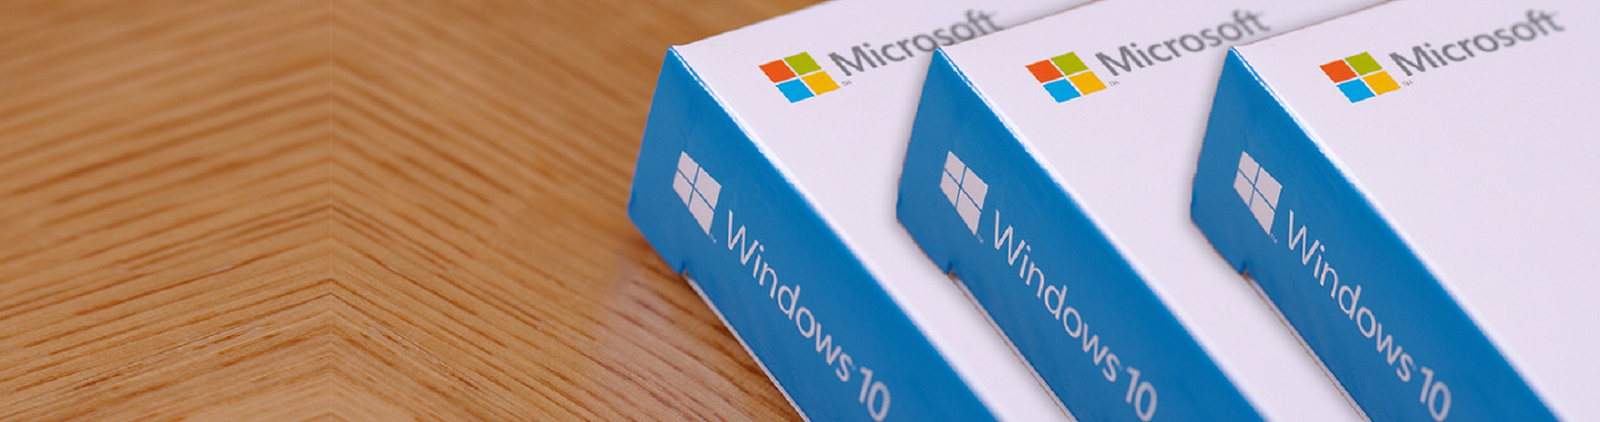 Professionista di Microsoft Windows 10